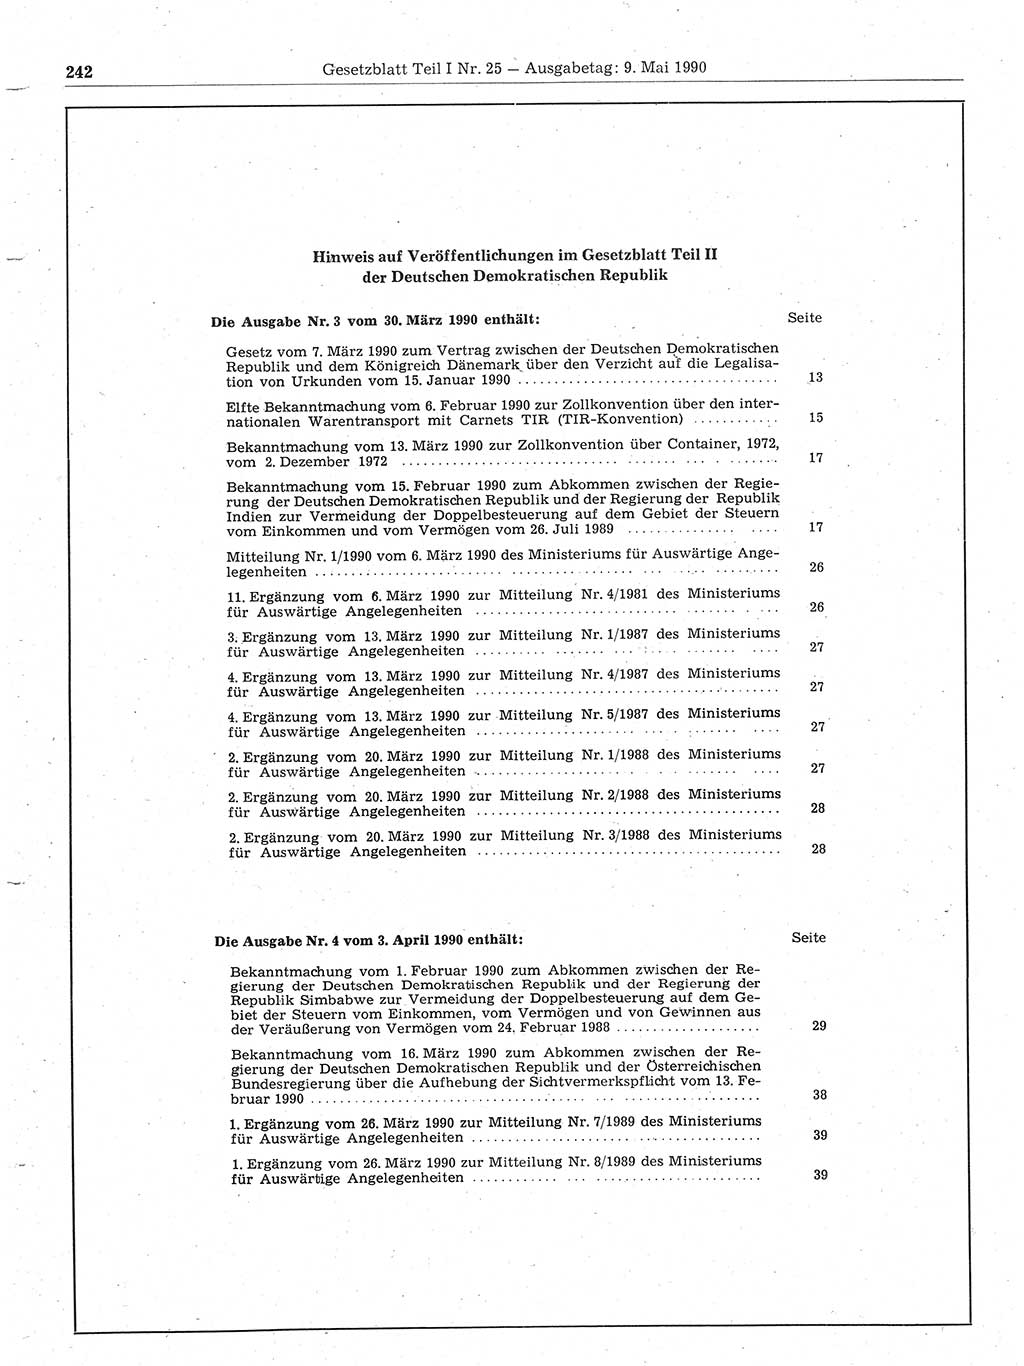 Gesetzblatt (GBl.) der Deutschen Demokratischen Republik (DDR) Teil Ⅰ 1990, Seite 242 (GBl. DDR Ⅰ 1990, S. 242)